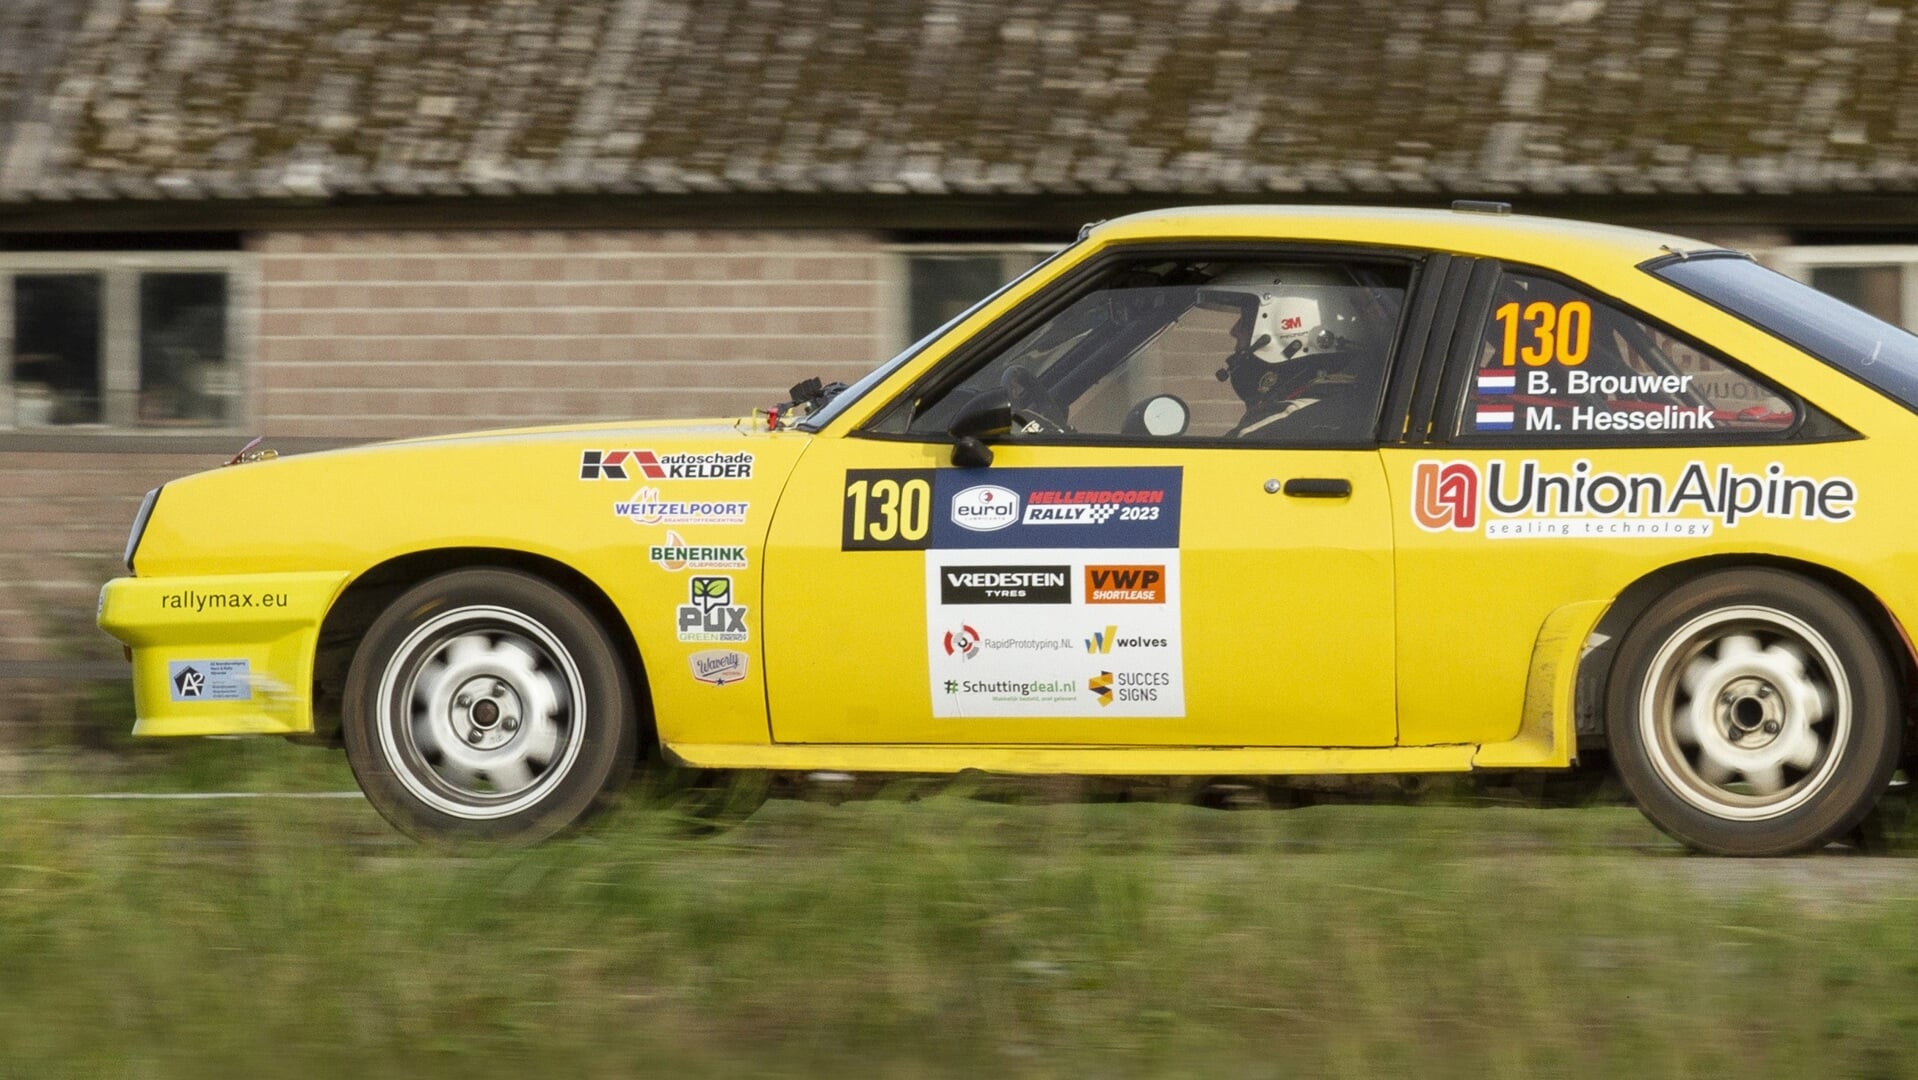 De rallyauto van Marcel Hesselink. (Foto: Martijn van Oort)